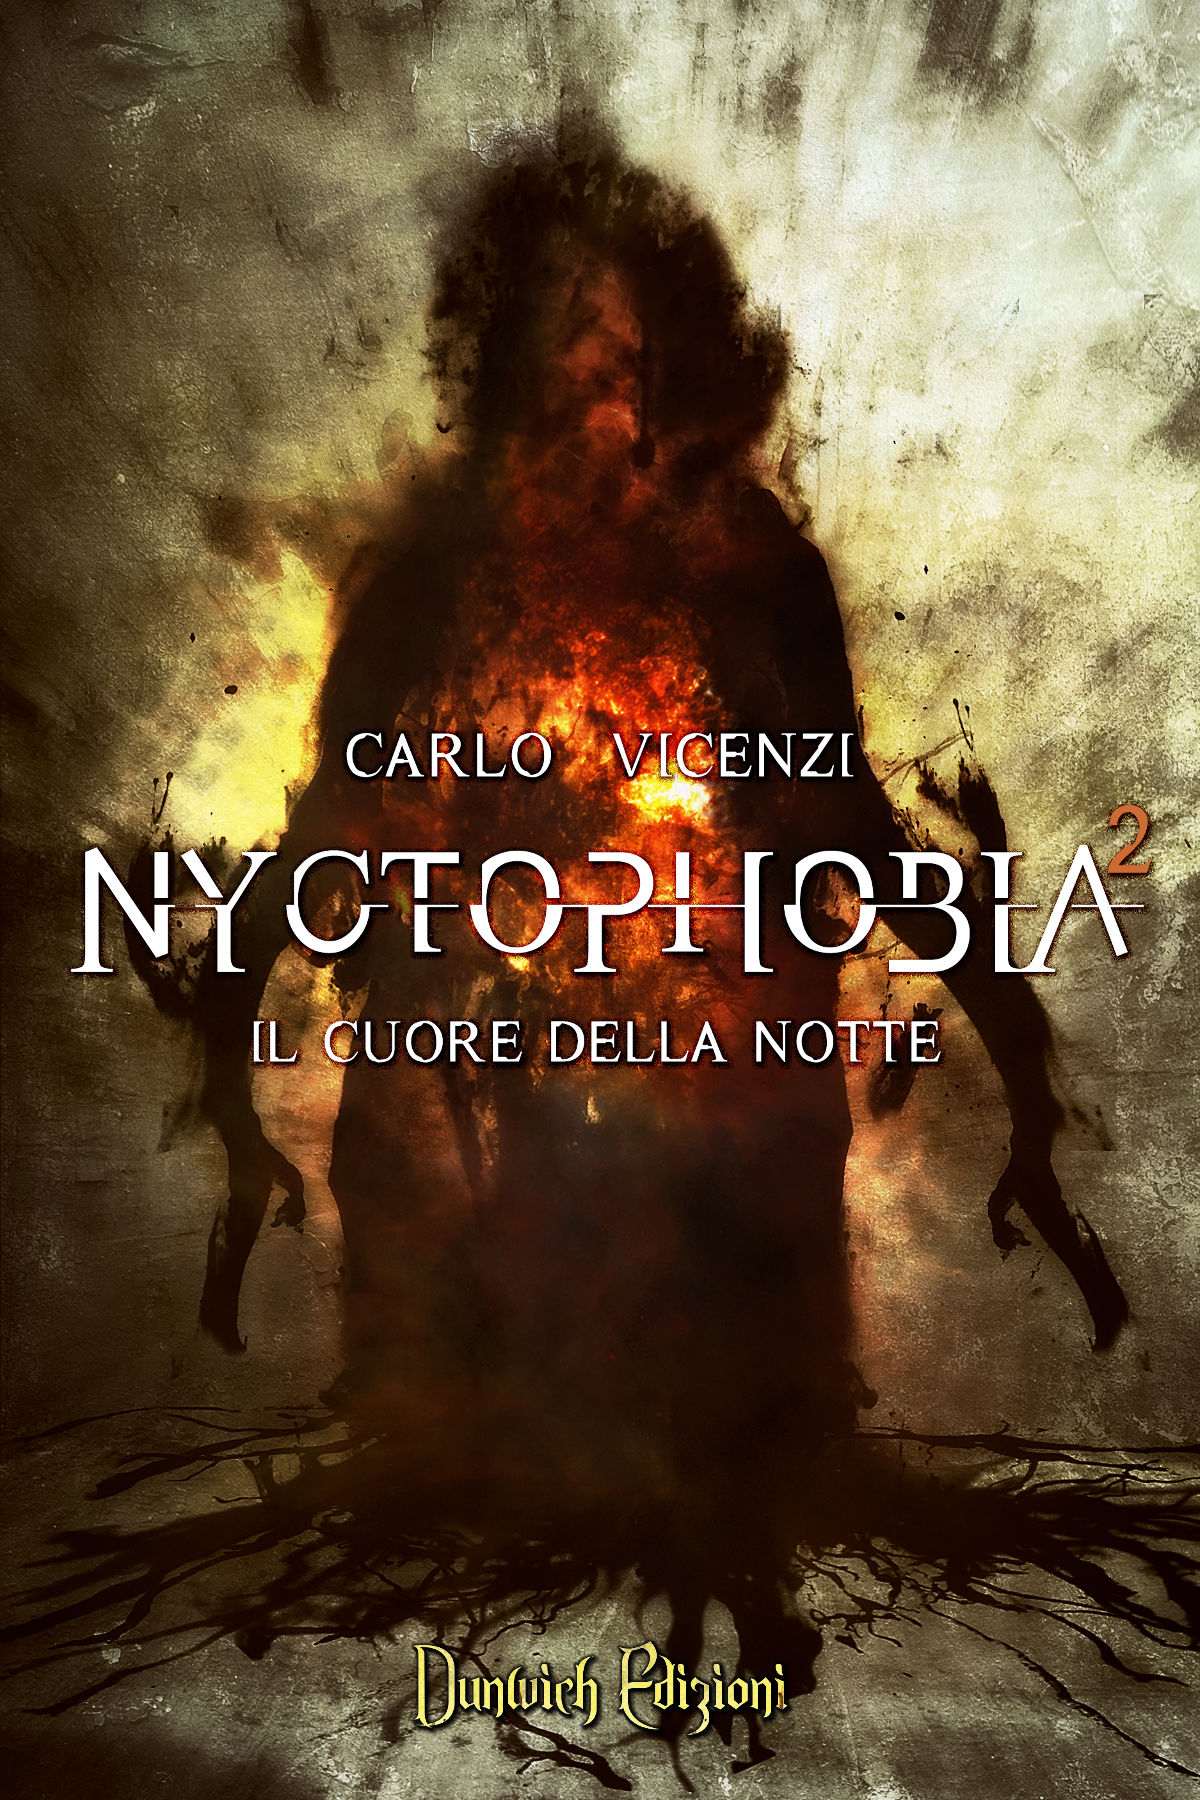 Nyctophobia 2 - Il cuore della nottedi Carlo Vicenzi